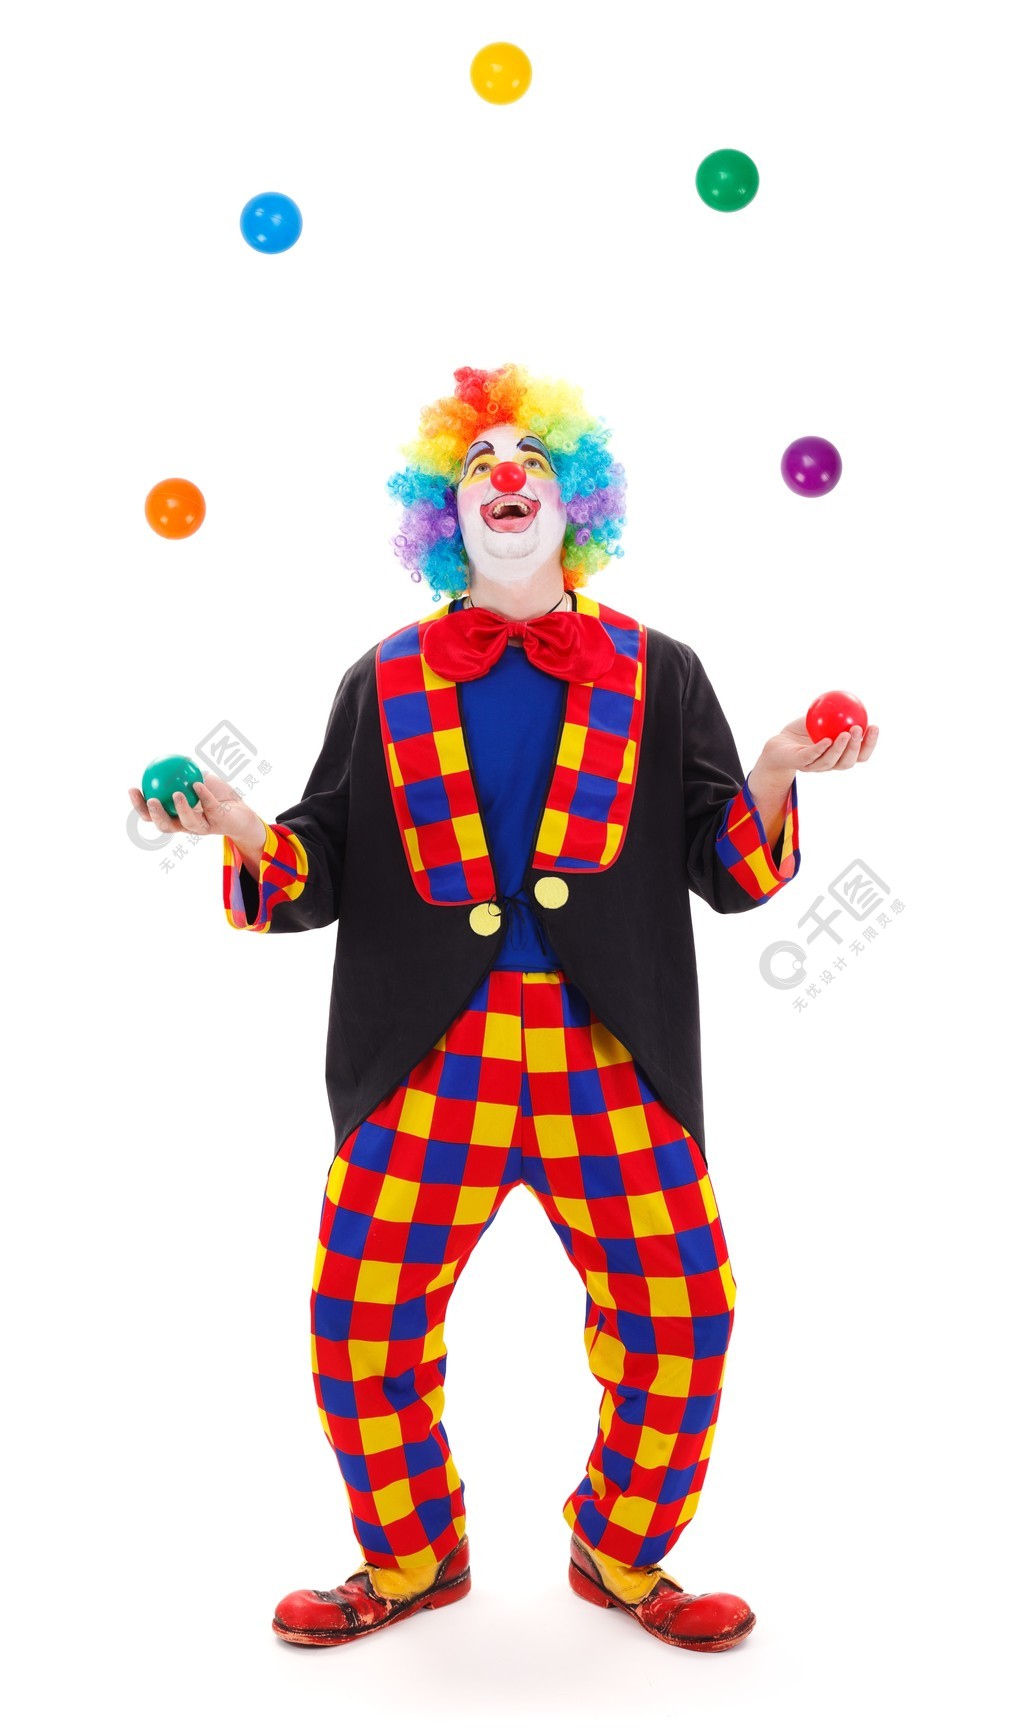 魔术师小丑抛出彩色球